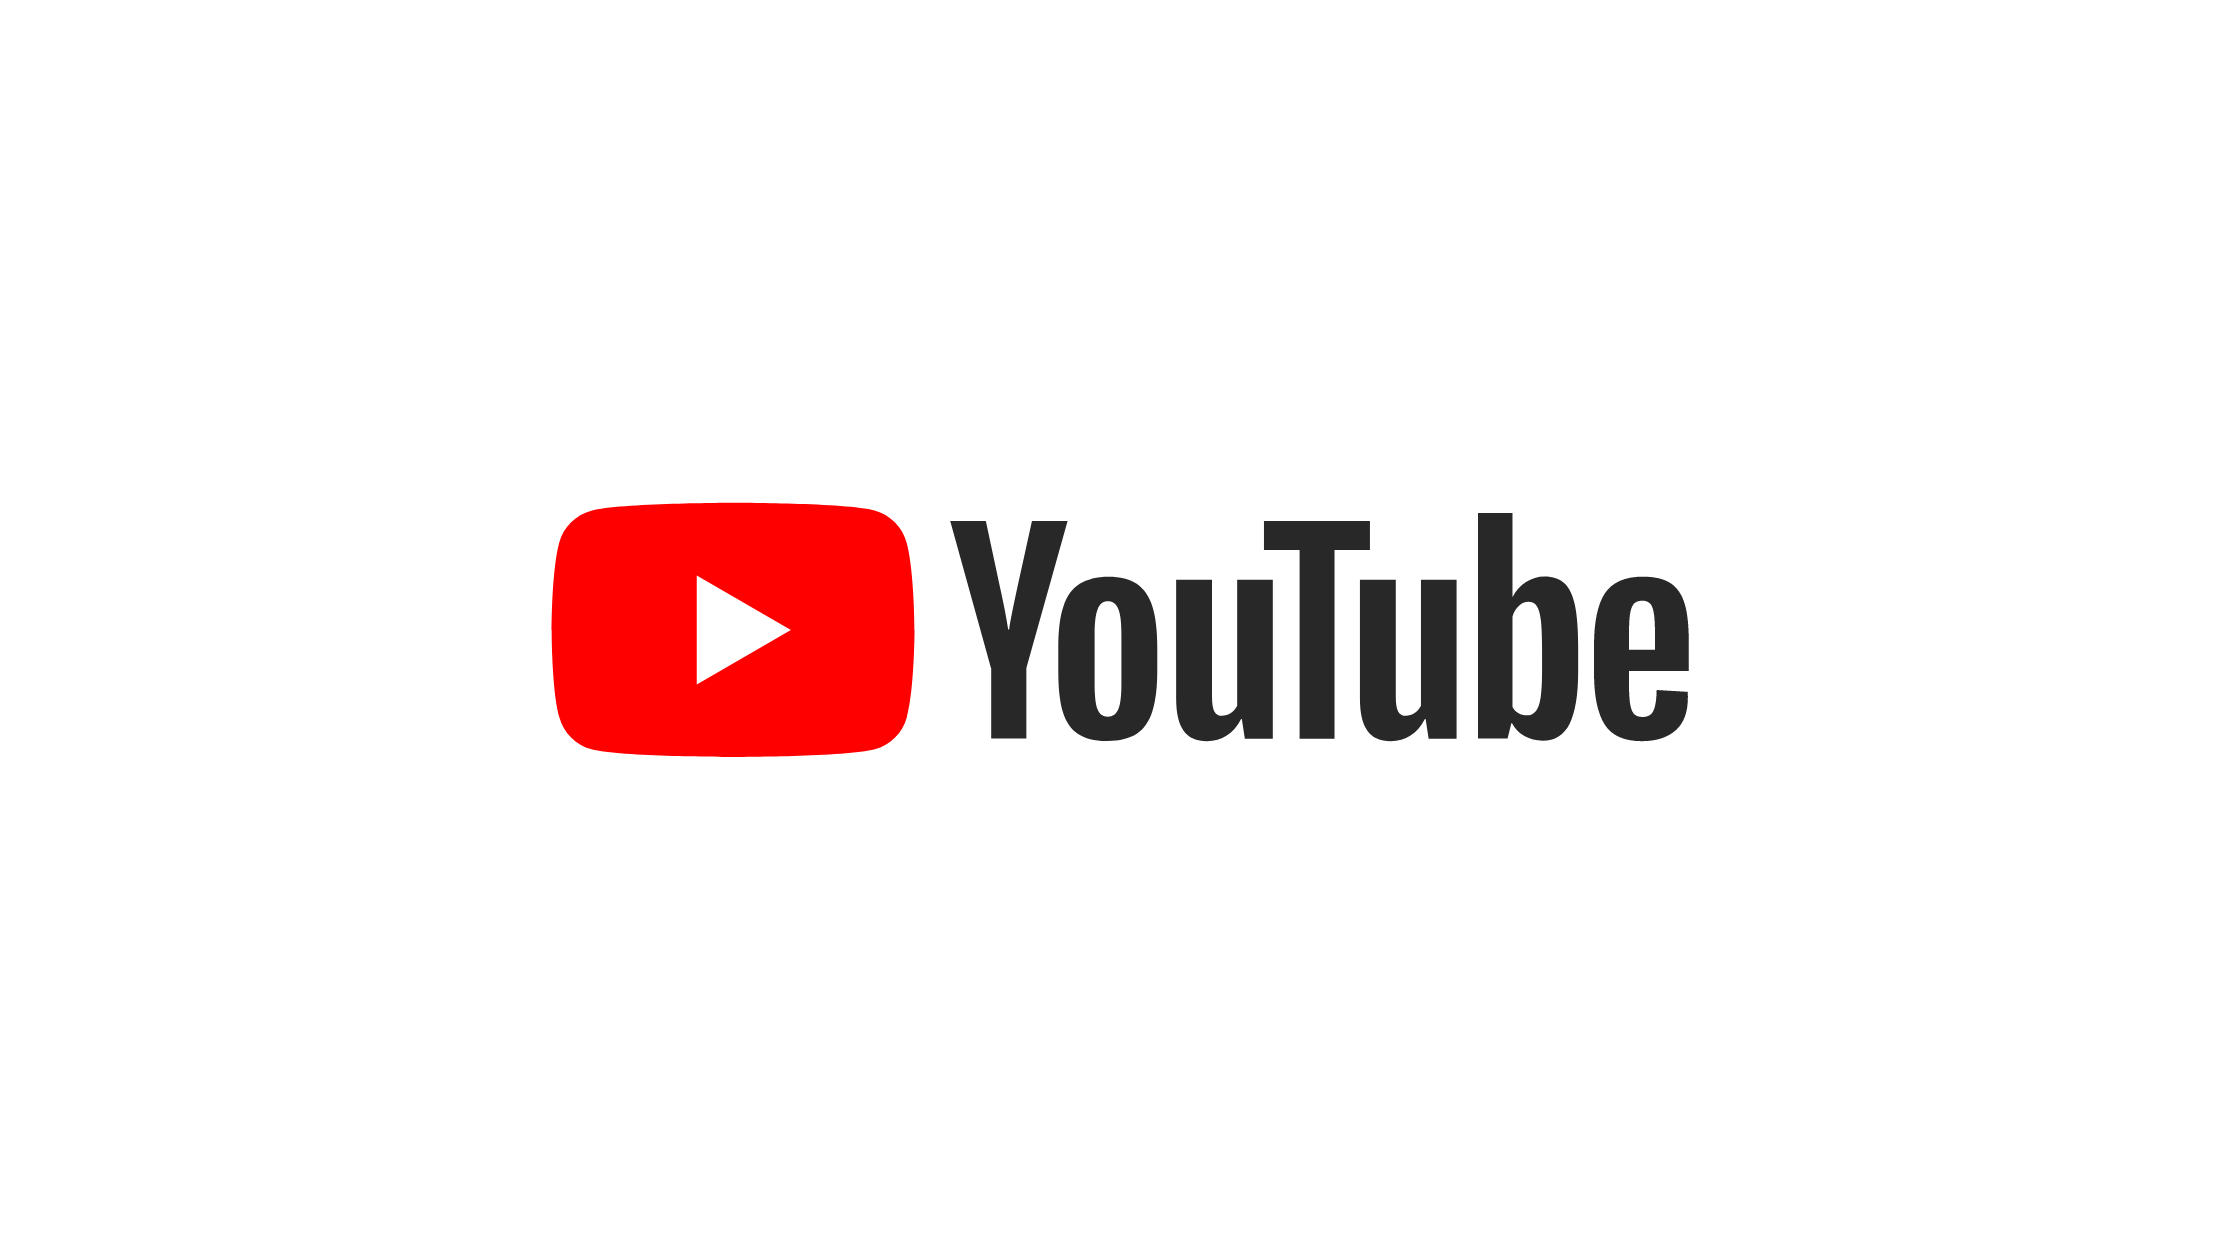 youtube logo design maker